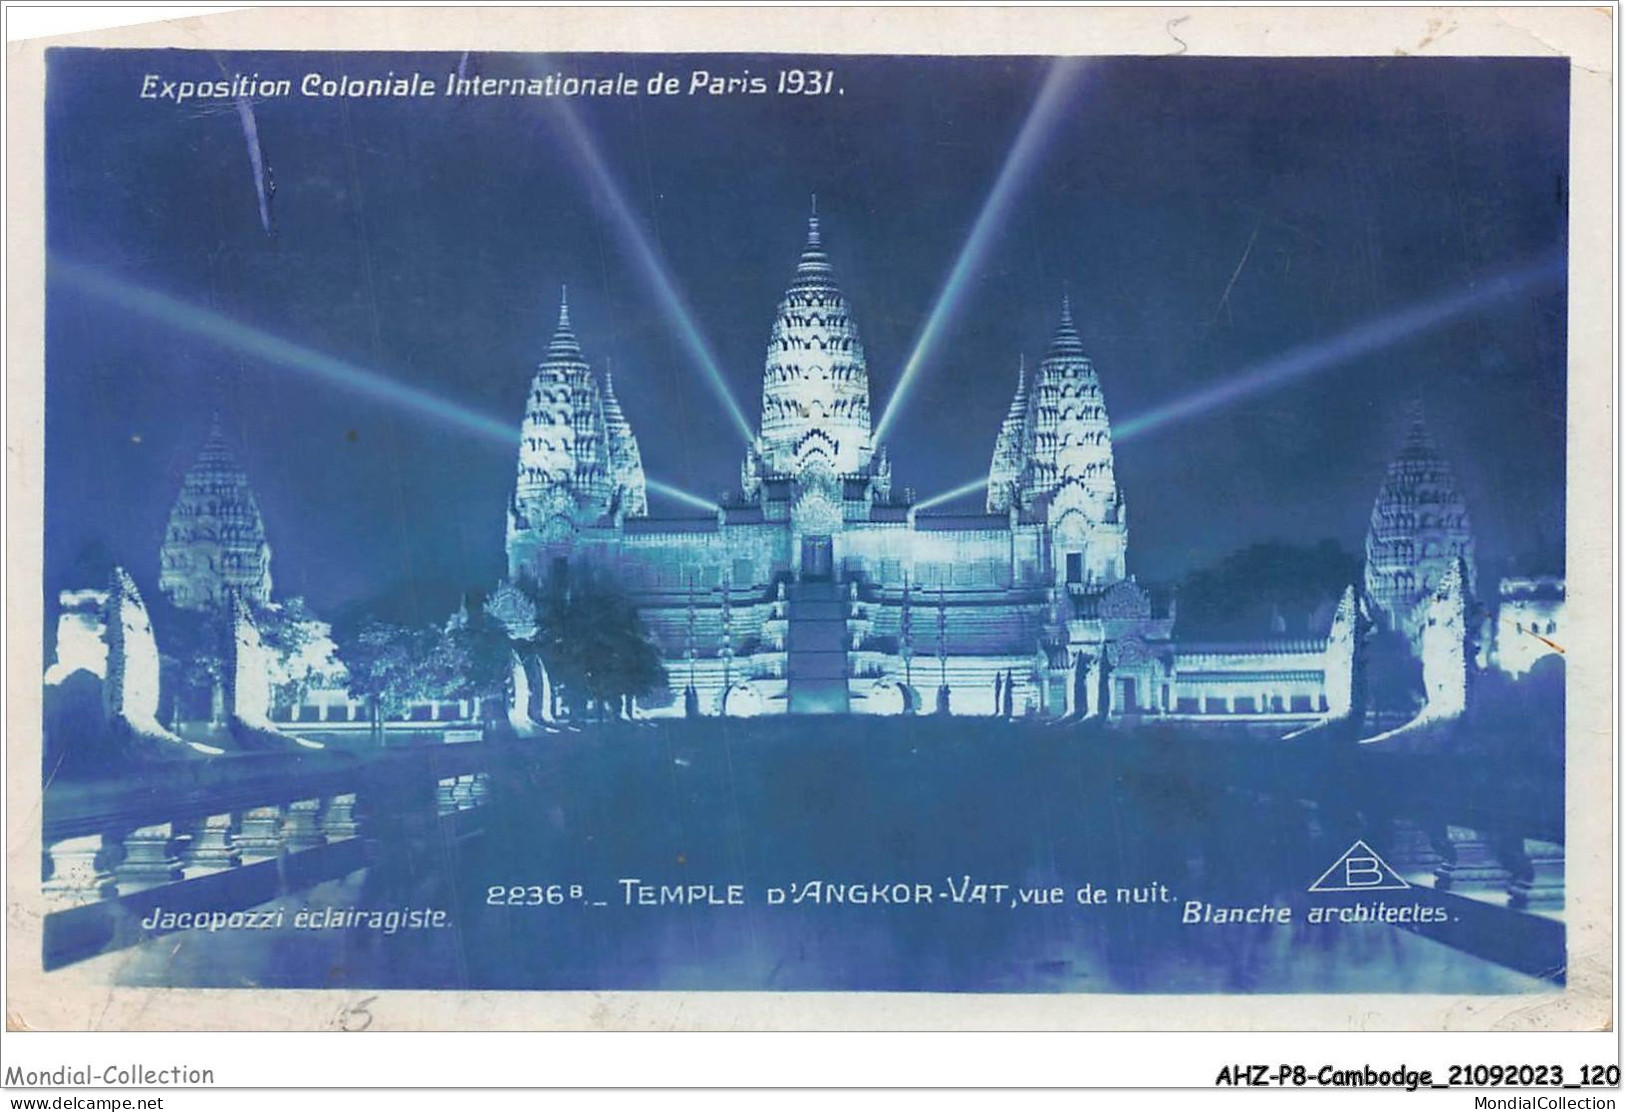 AHZP8-CAMBODGE-0743 - EXPOSITION COLONIALE INTERNATIONALE - PARIS 1931 - TEMPLE D'ANGKOR-VAT - VUE DE NUIT - Cambodia